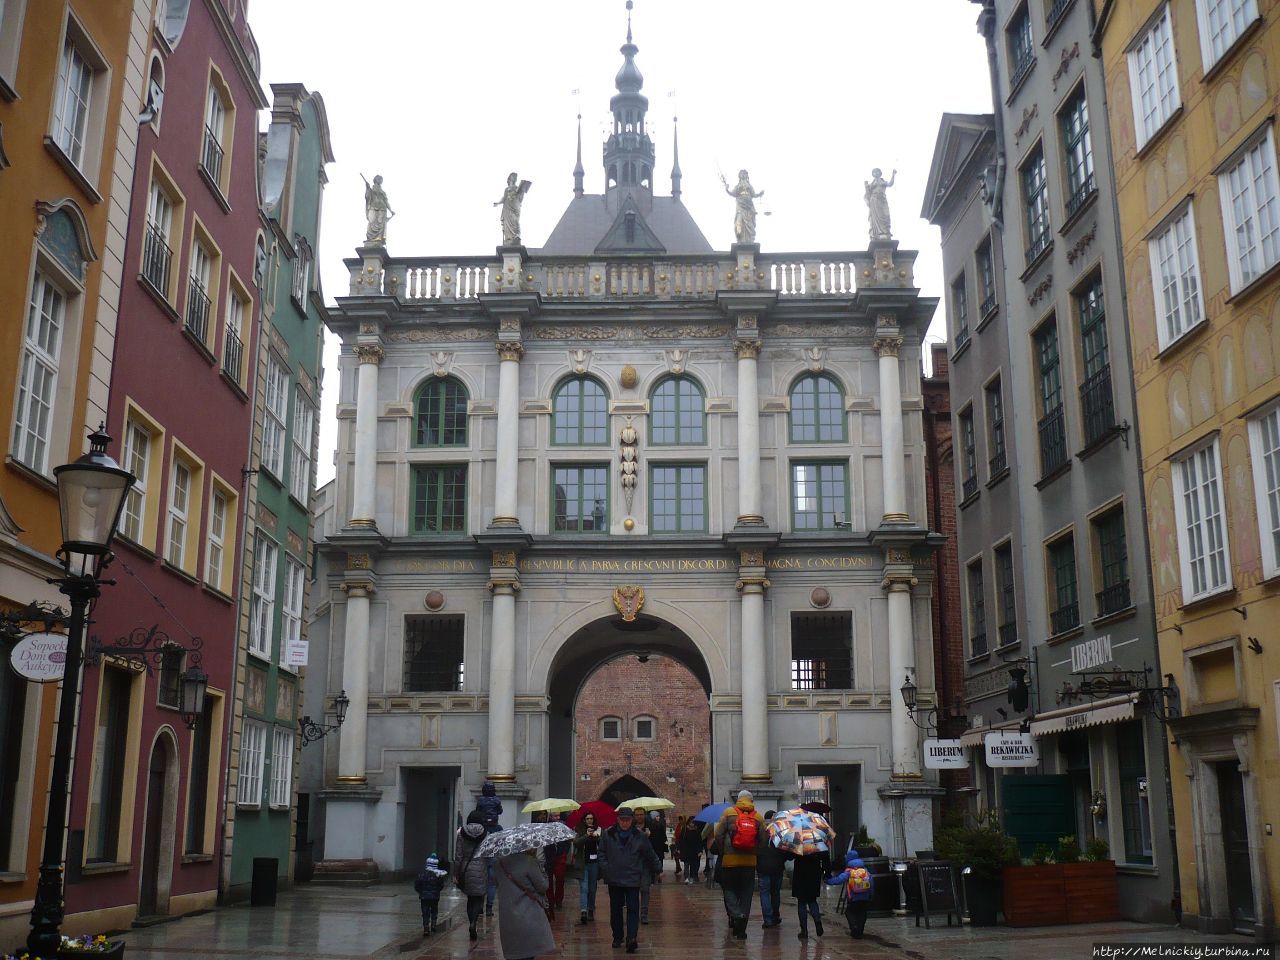 Пасхальная прогулка по старинному городу в дождливый день Гданьск, Польша